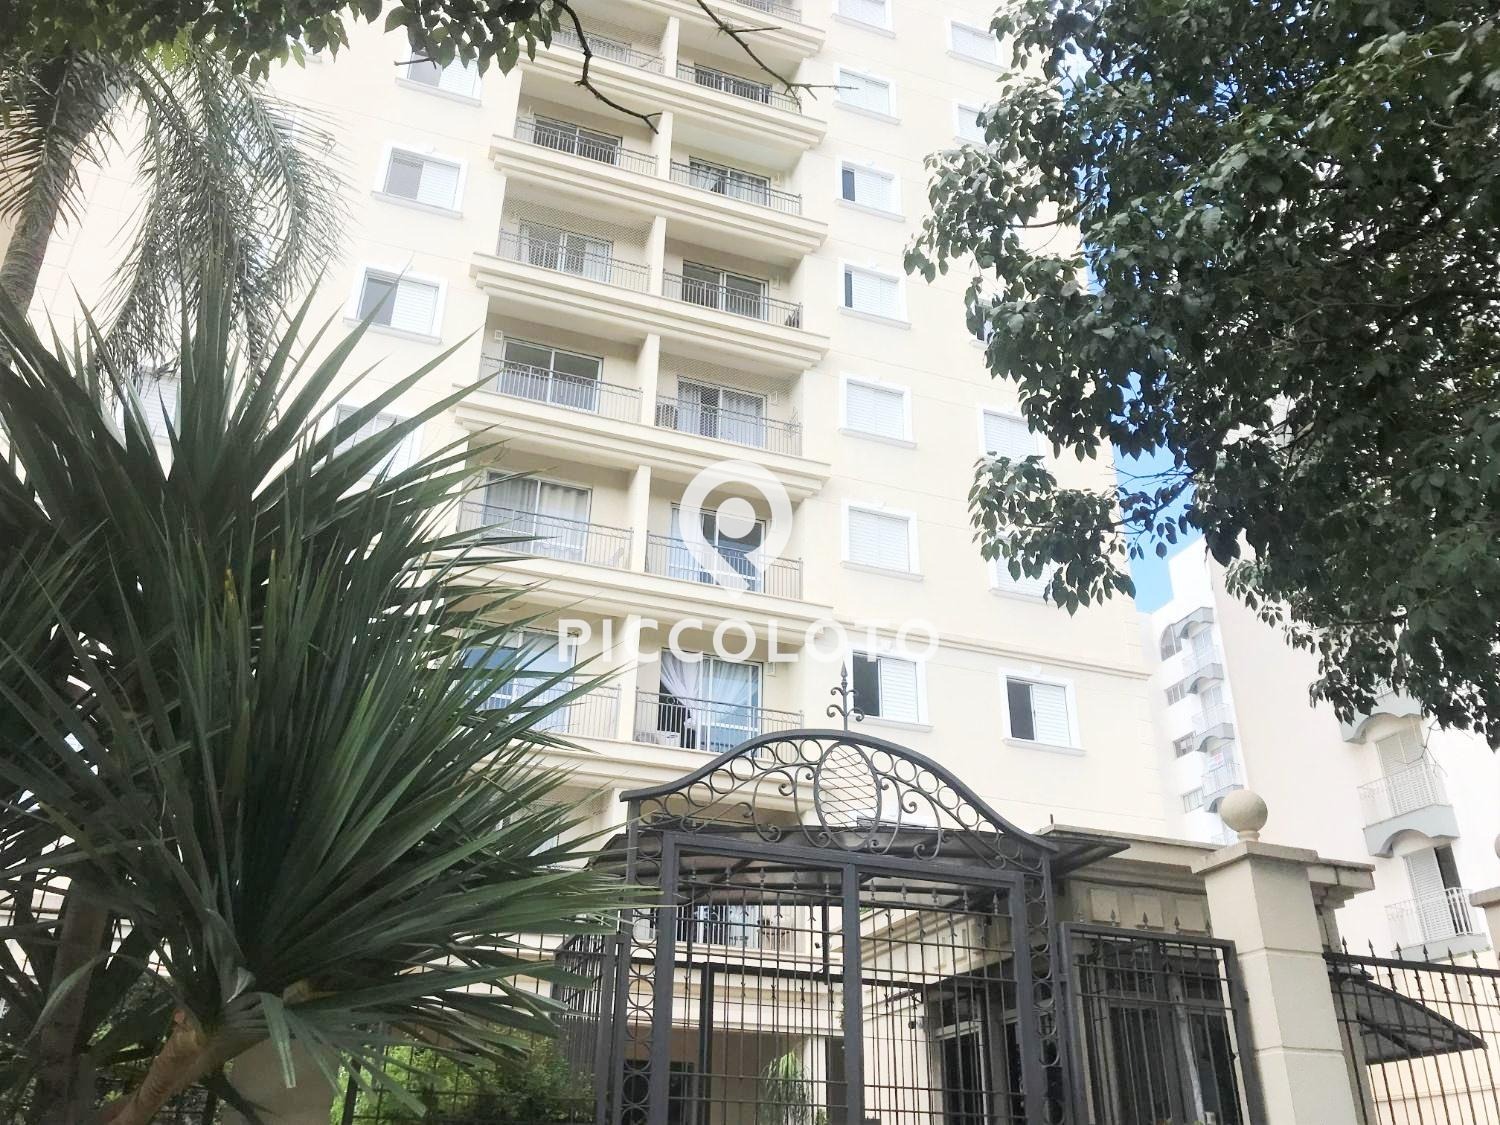 Piccoloto - Apartamento à venda no Jardim das Paineiras em Campinas